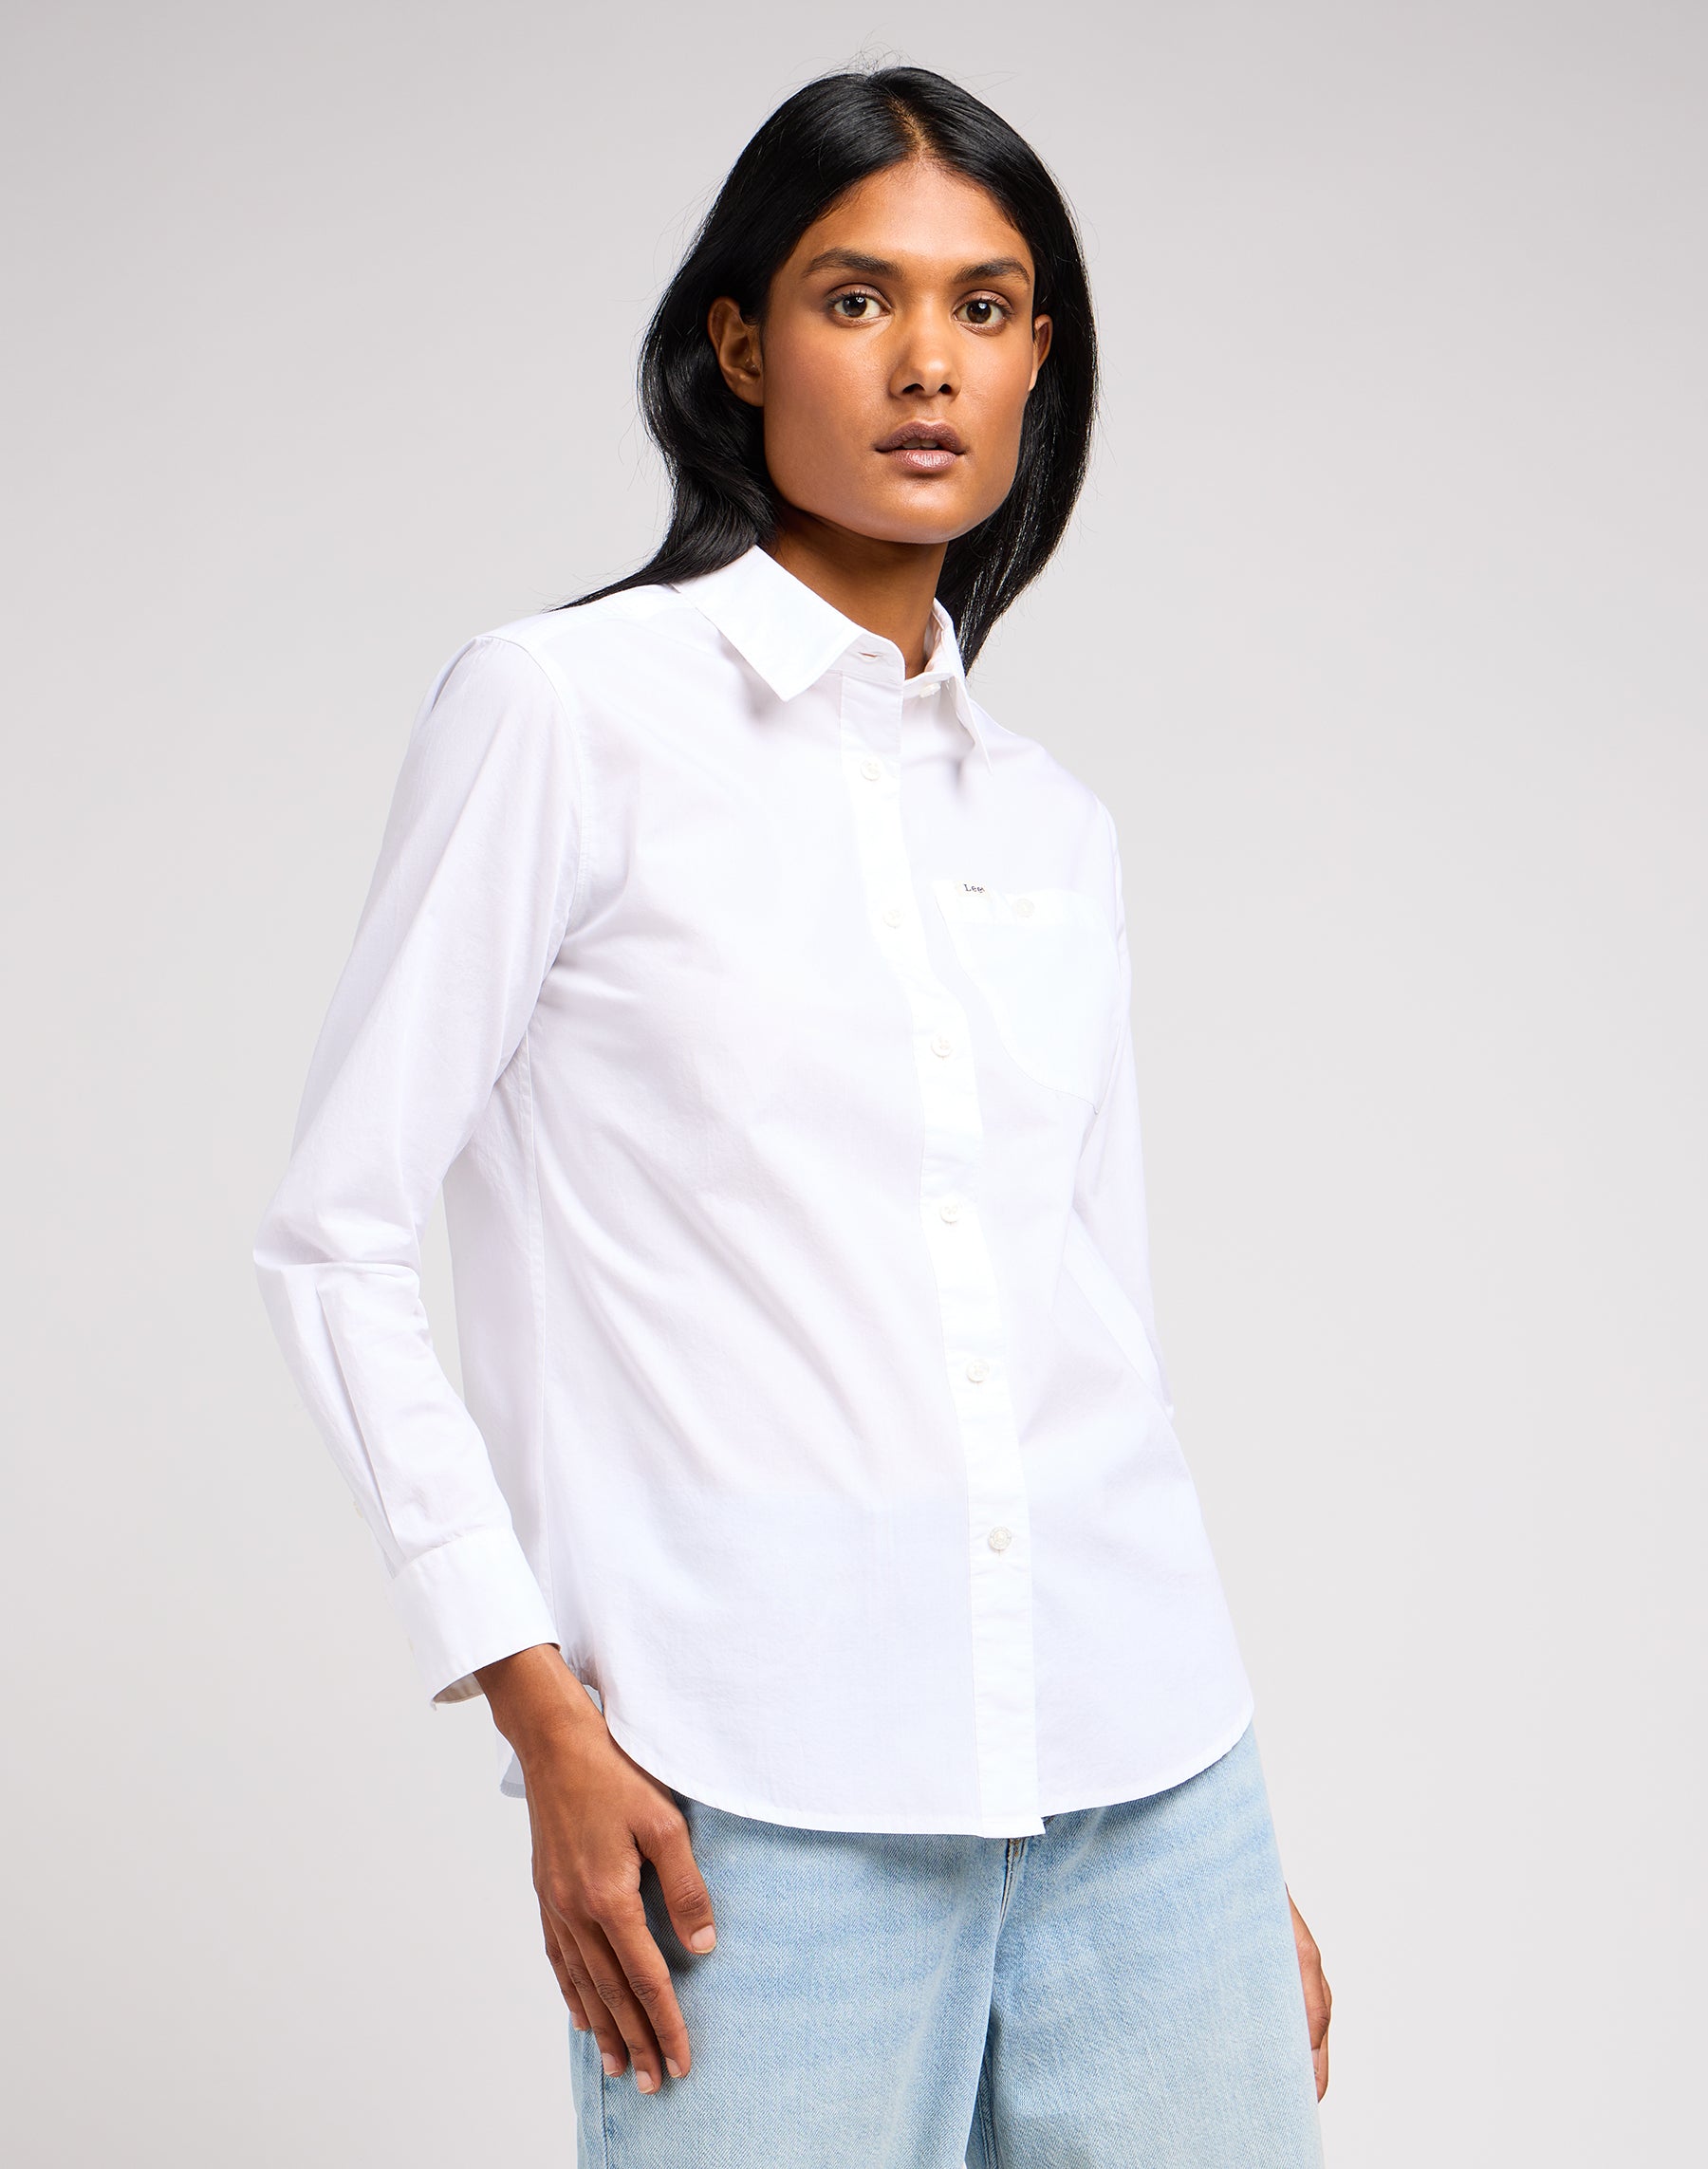 All Purpose Shirt in Bright White Hemden Lee   